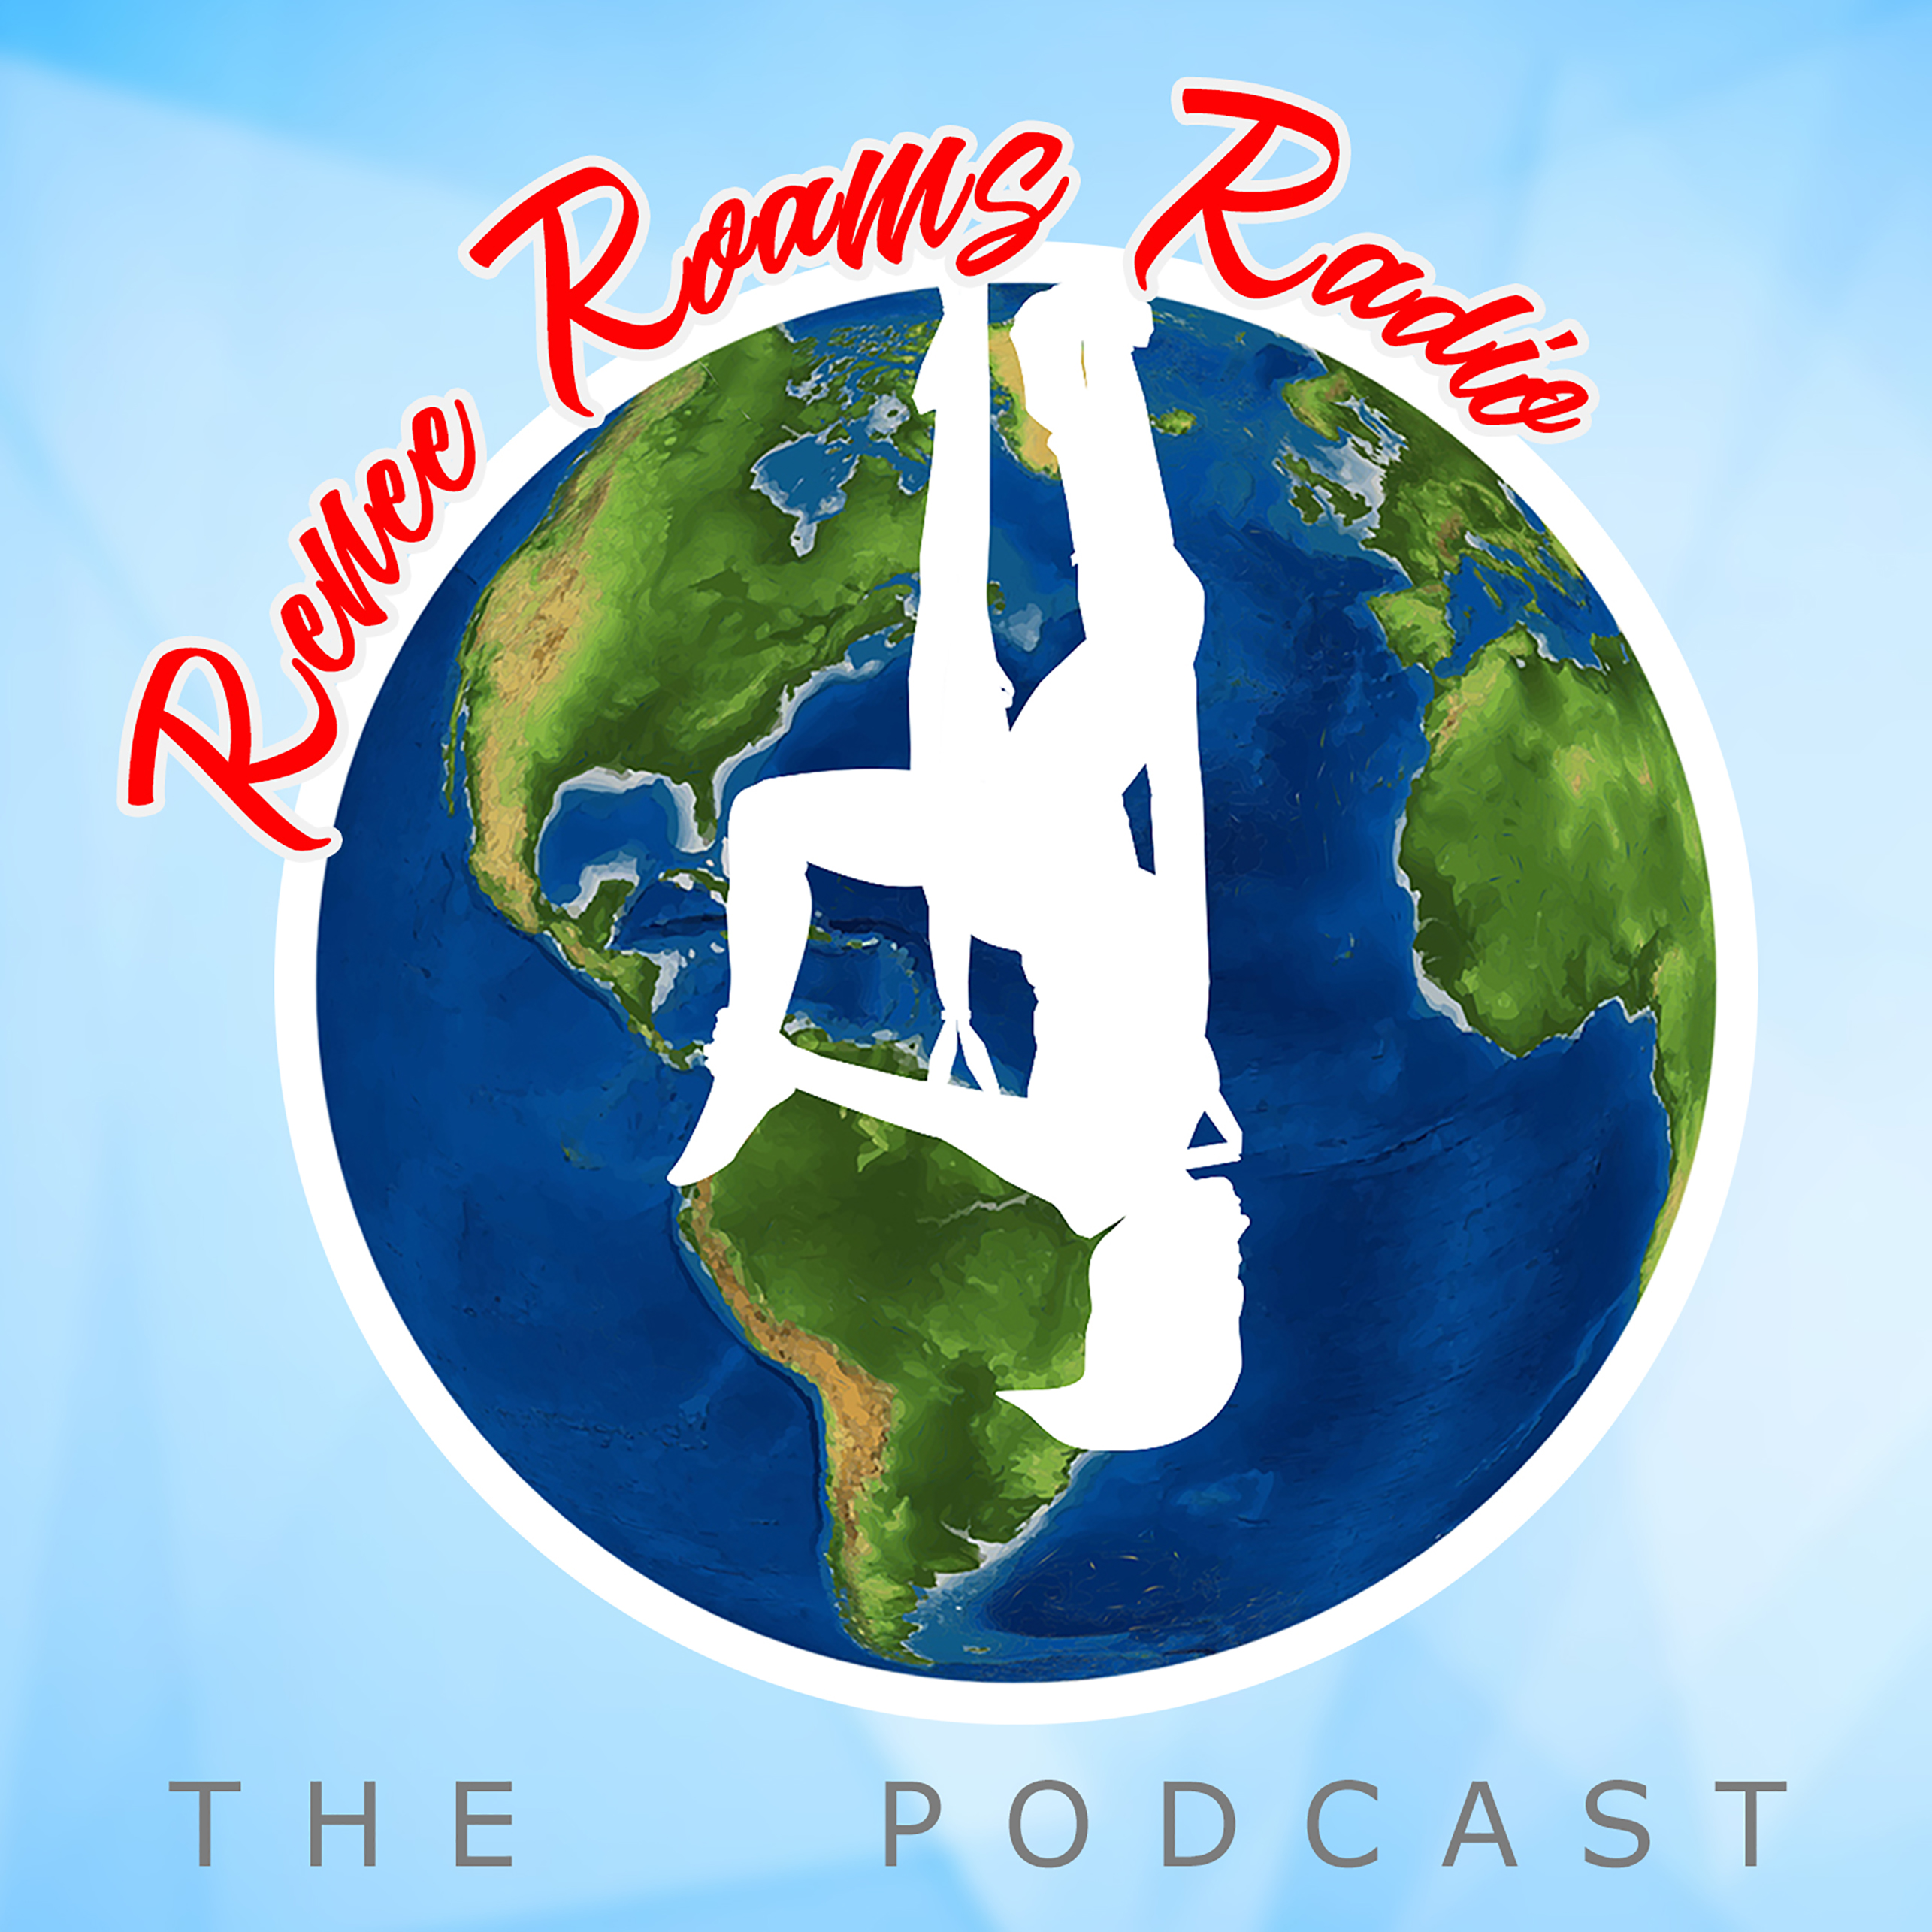 Renee Roams Radio Podcast